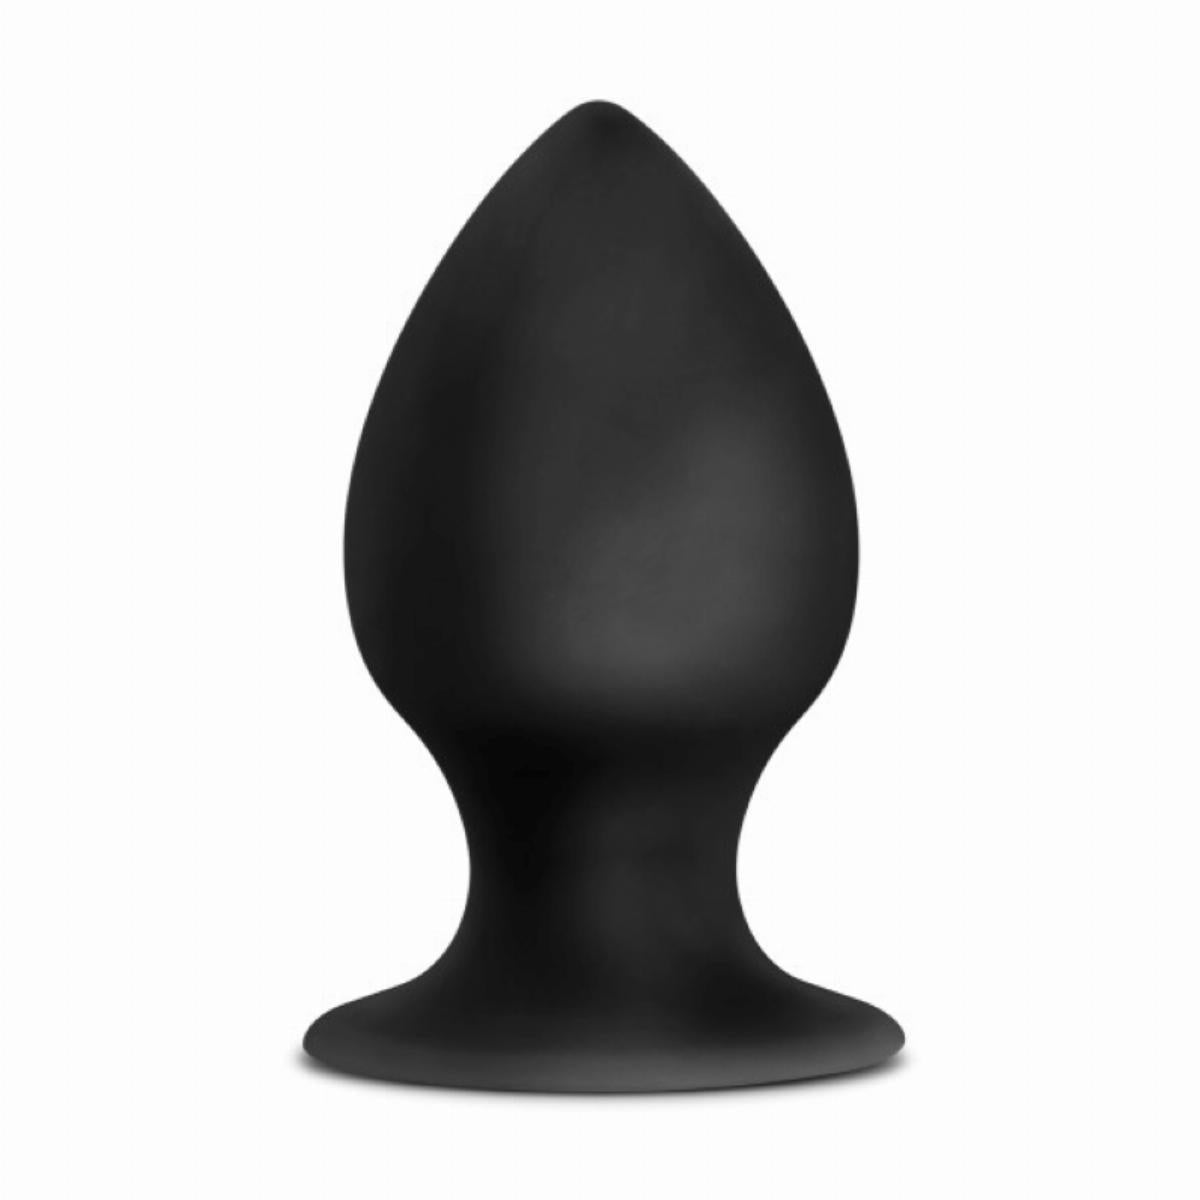 Zwarte stout butt plug met spitse punt, gemaakt van siliconen, breng je makkelijk in. De butt plug heeft het formaat large en is van Anal Adventures. Deze butt plug is te koop bij Flavourez.